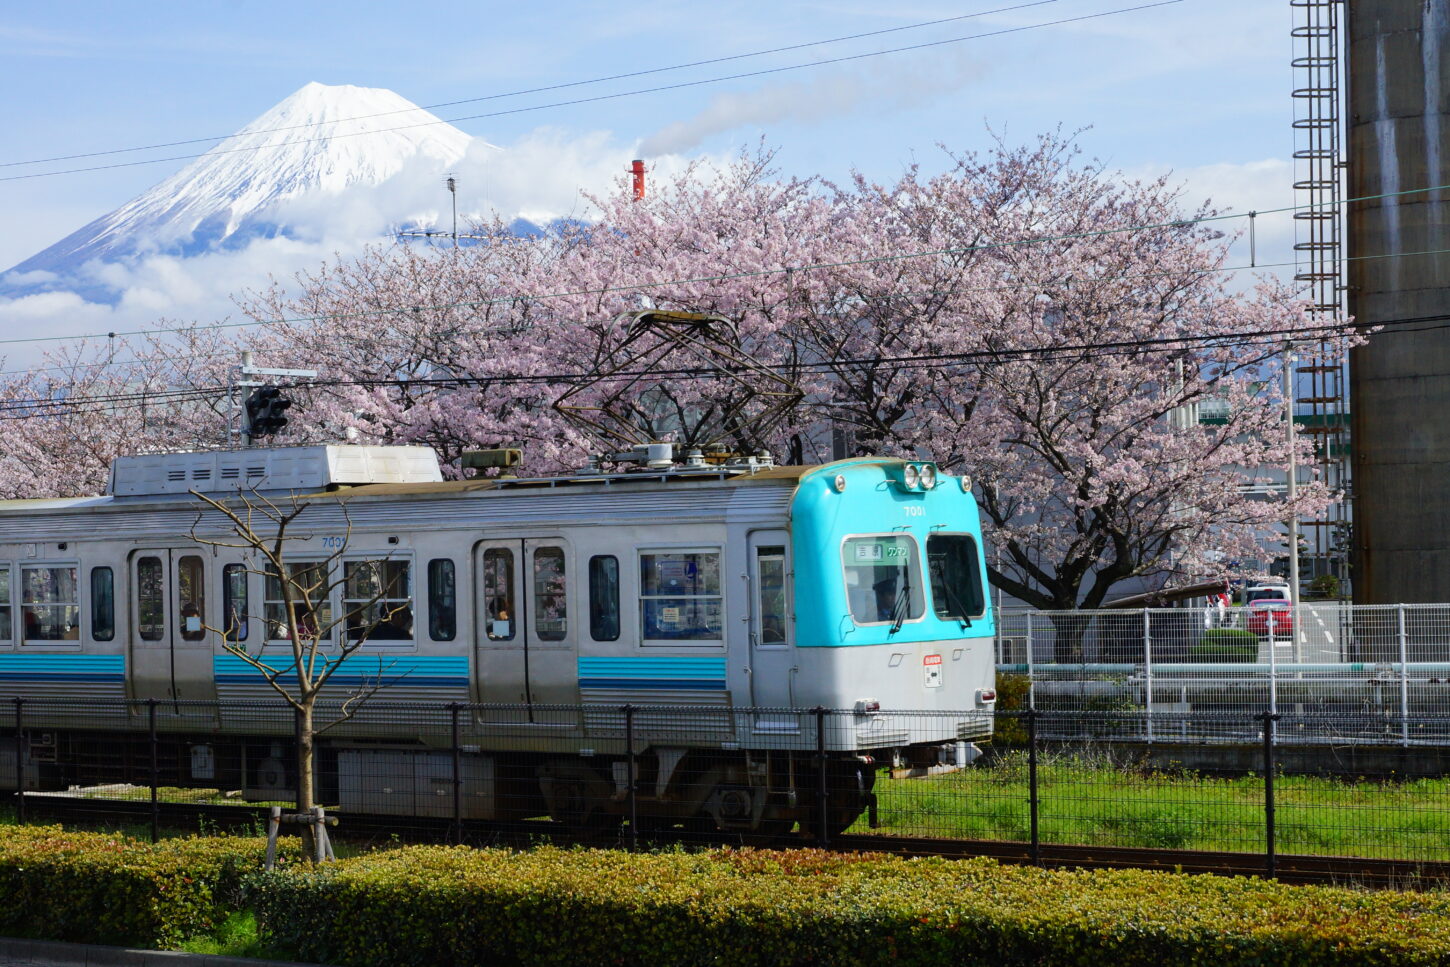 静岡自慢のローカル線 岳南電車 を全力で楽しみ尽くす 静岡県観光公式ブログ